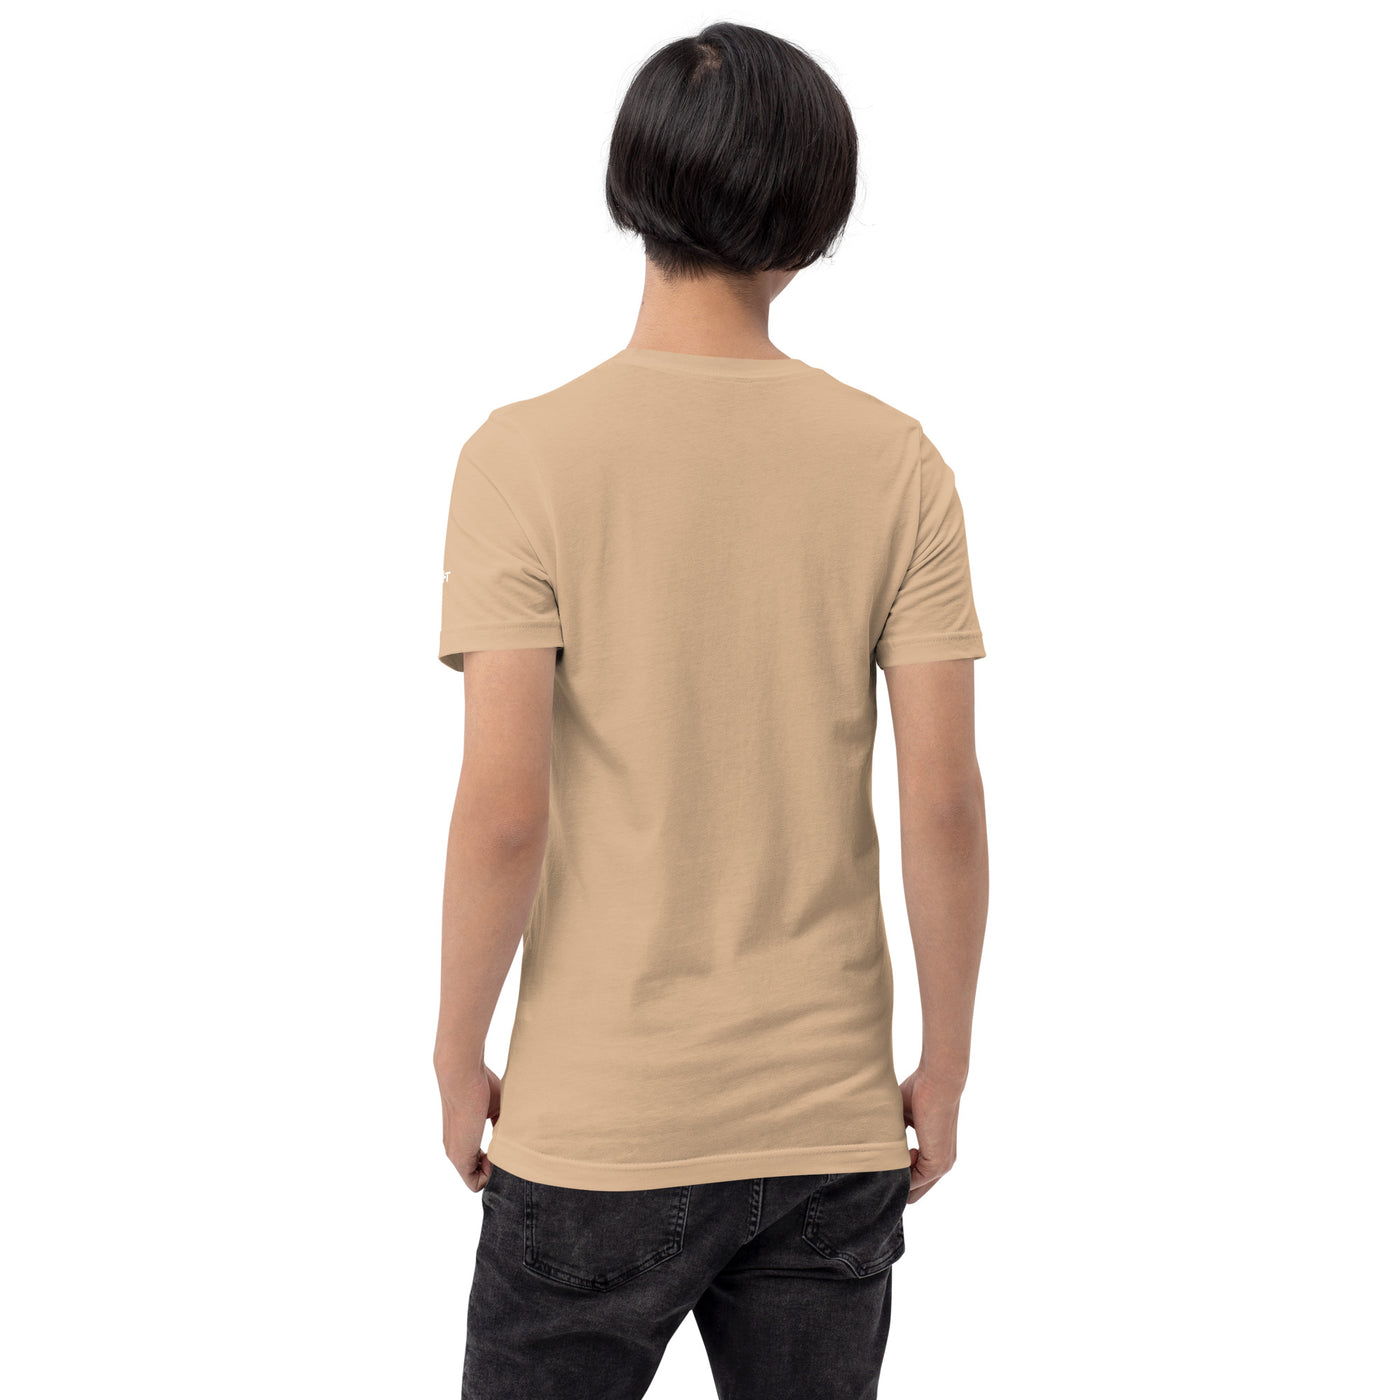 Earn Dividends - Unisex t-shirt